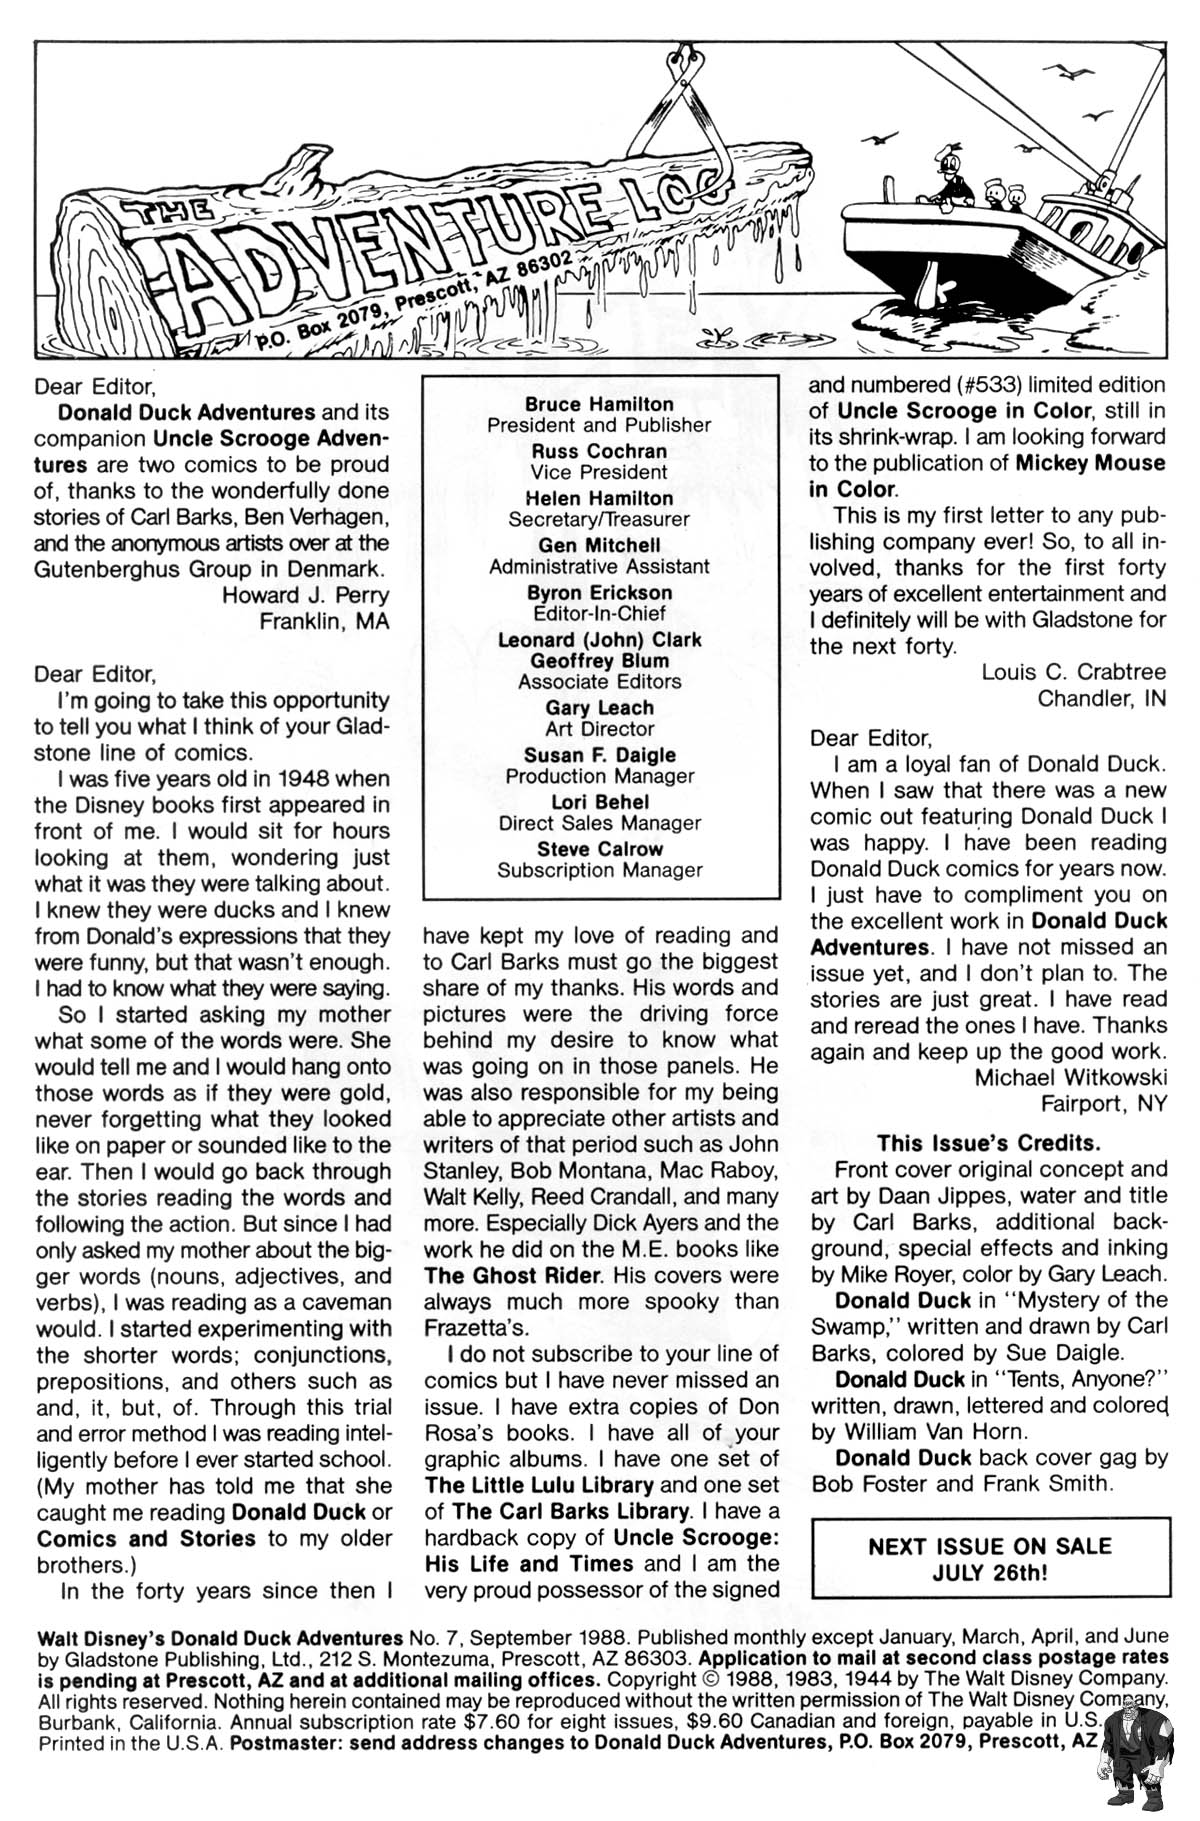 Read online Walt Disney's Donald Duck Adventures (1987) comic -  Issue #7 - 2